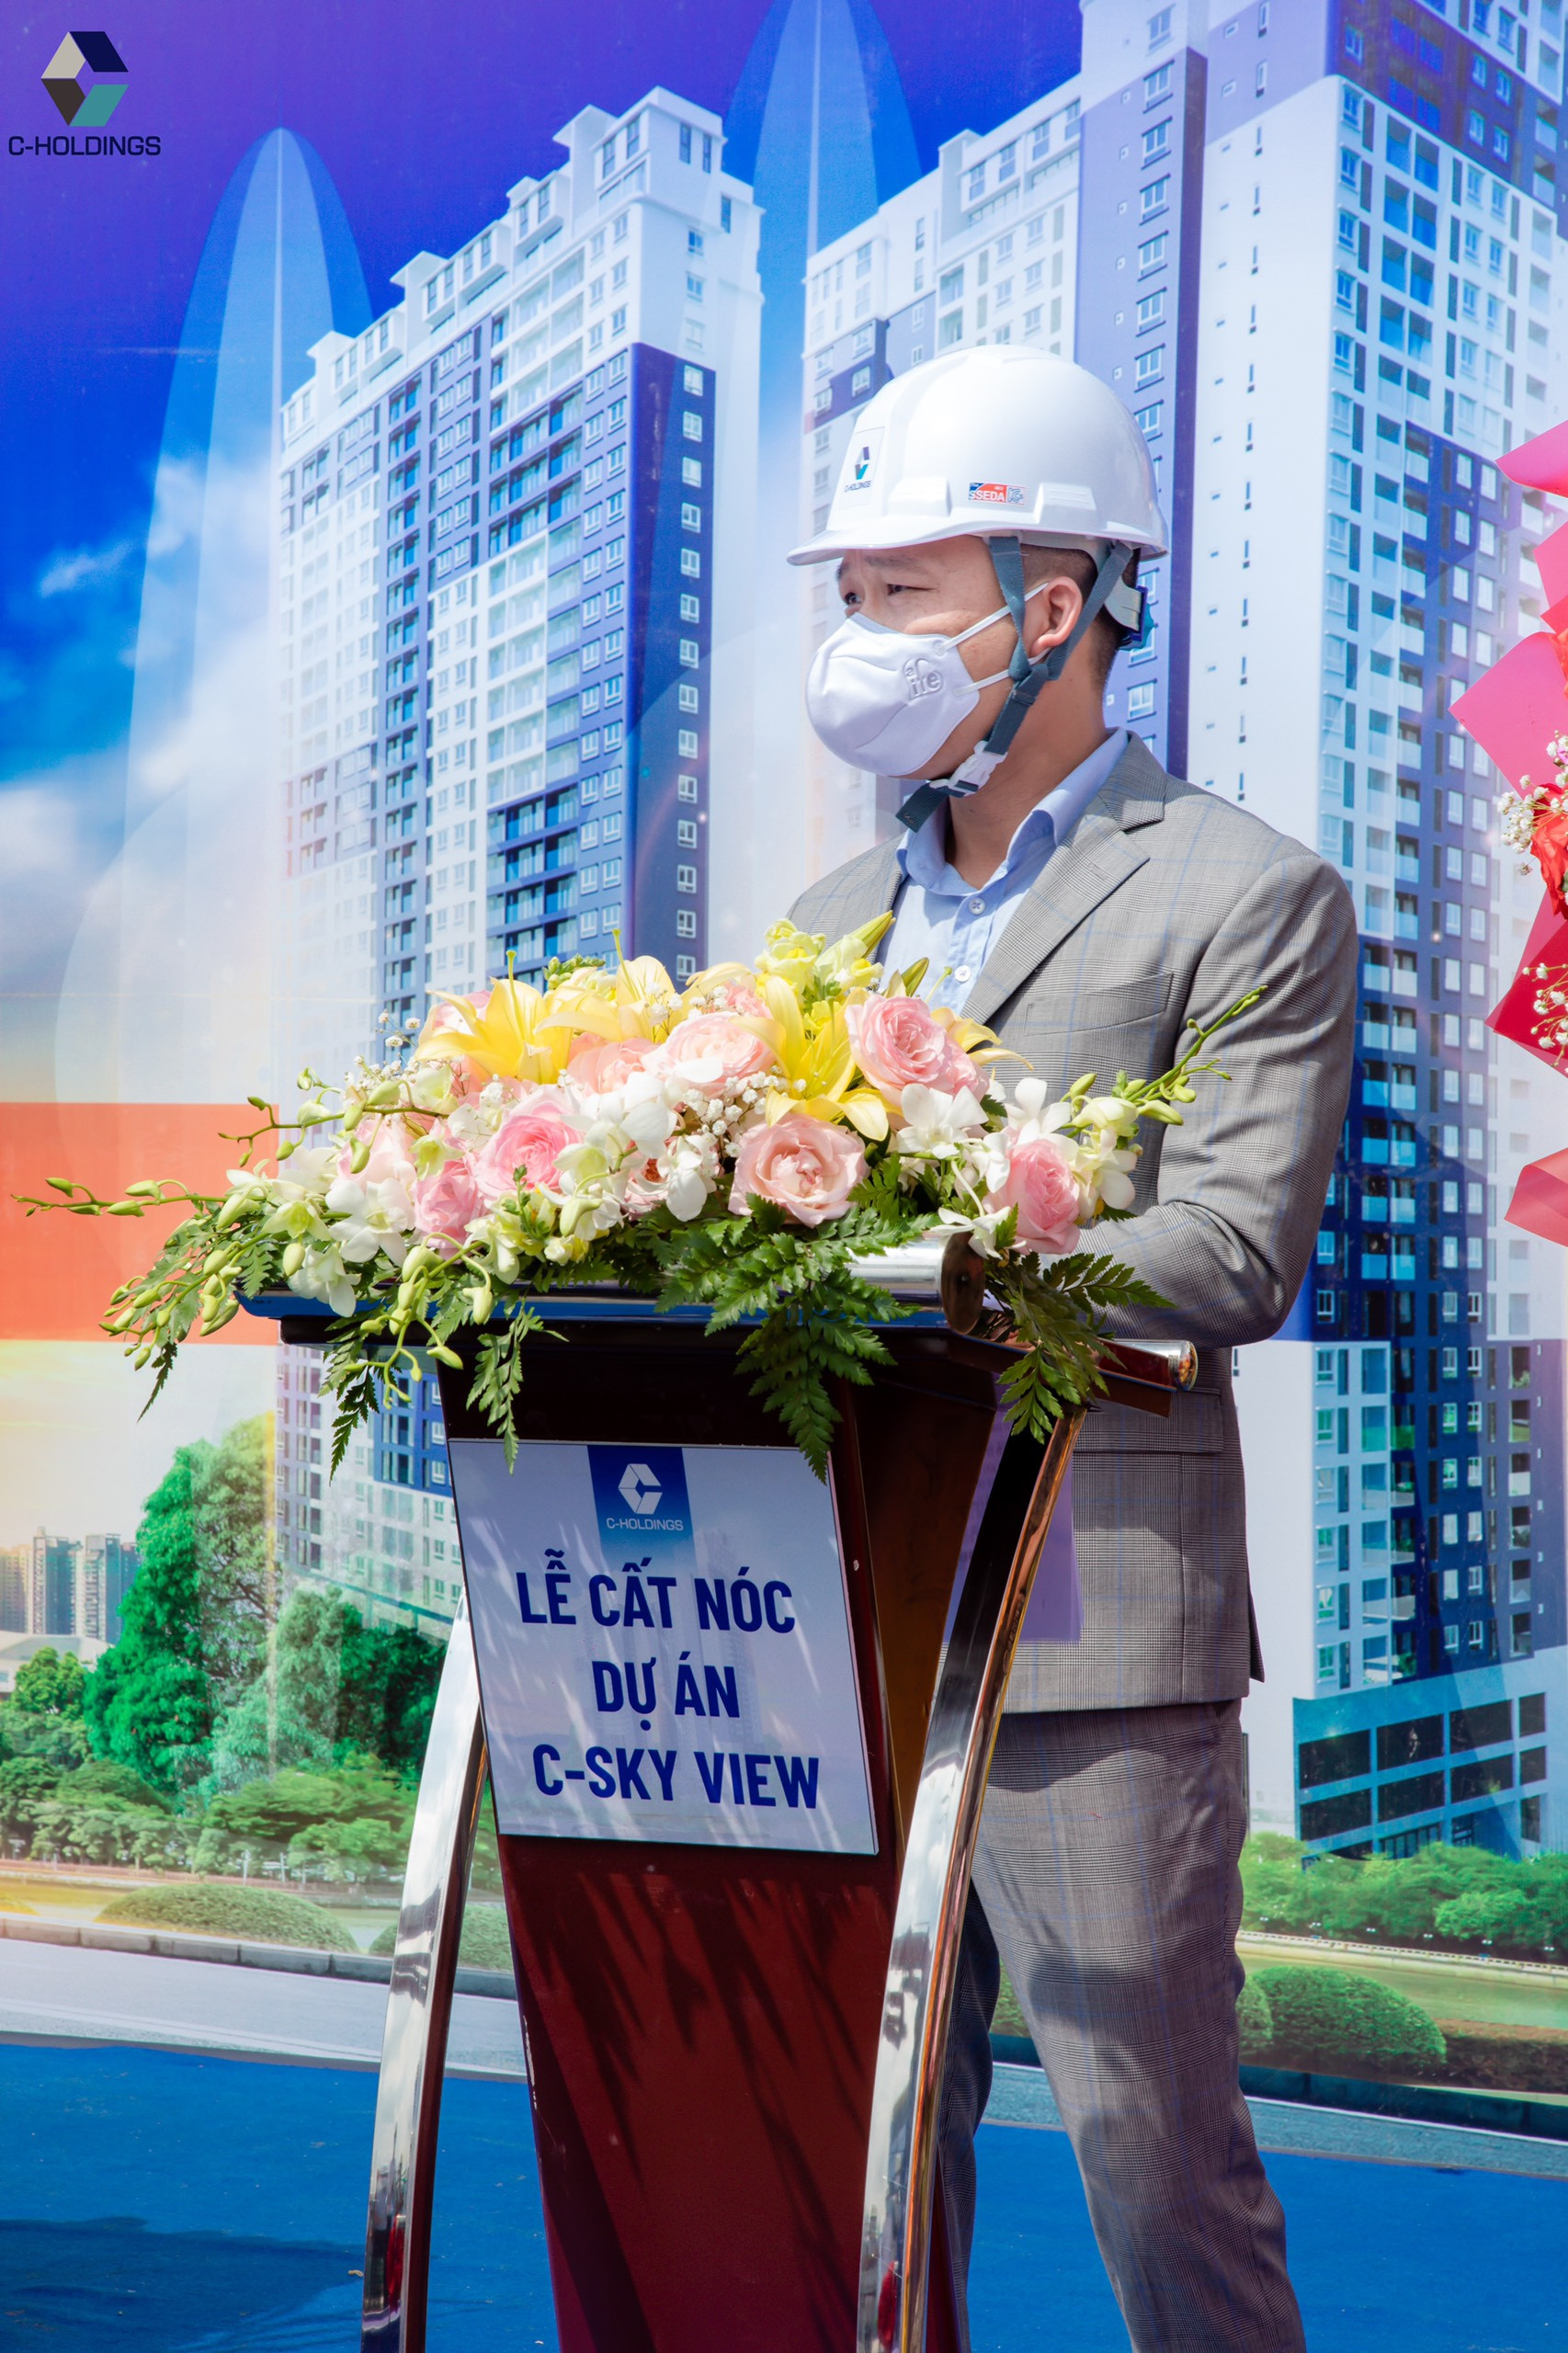 Ông Trần Văn Hưng, Giám đốc Kinh doanh C-Holdings phát biểu tại lễ cất nóc dự án